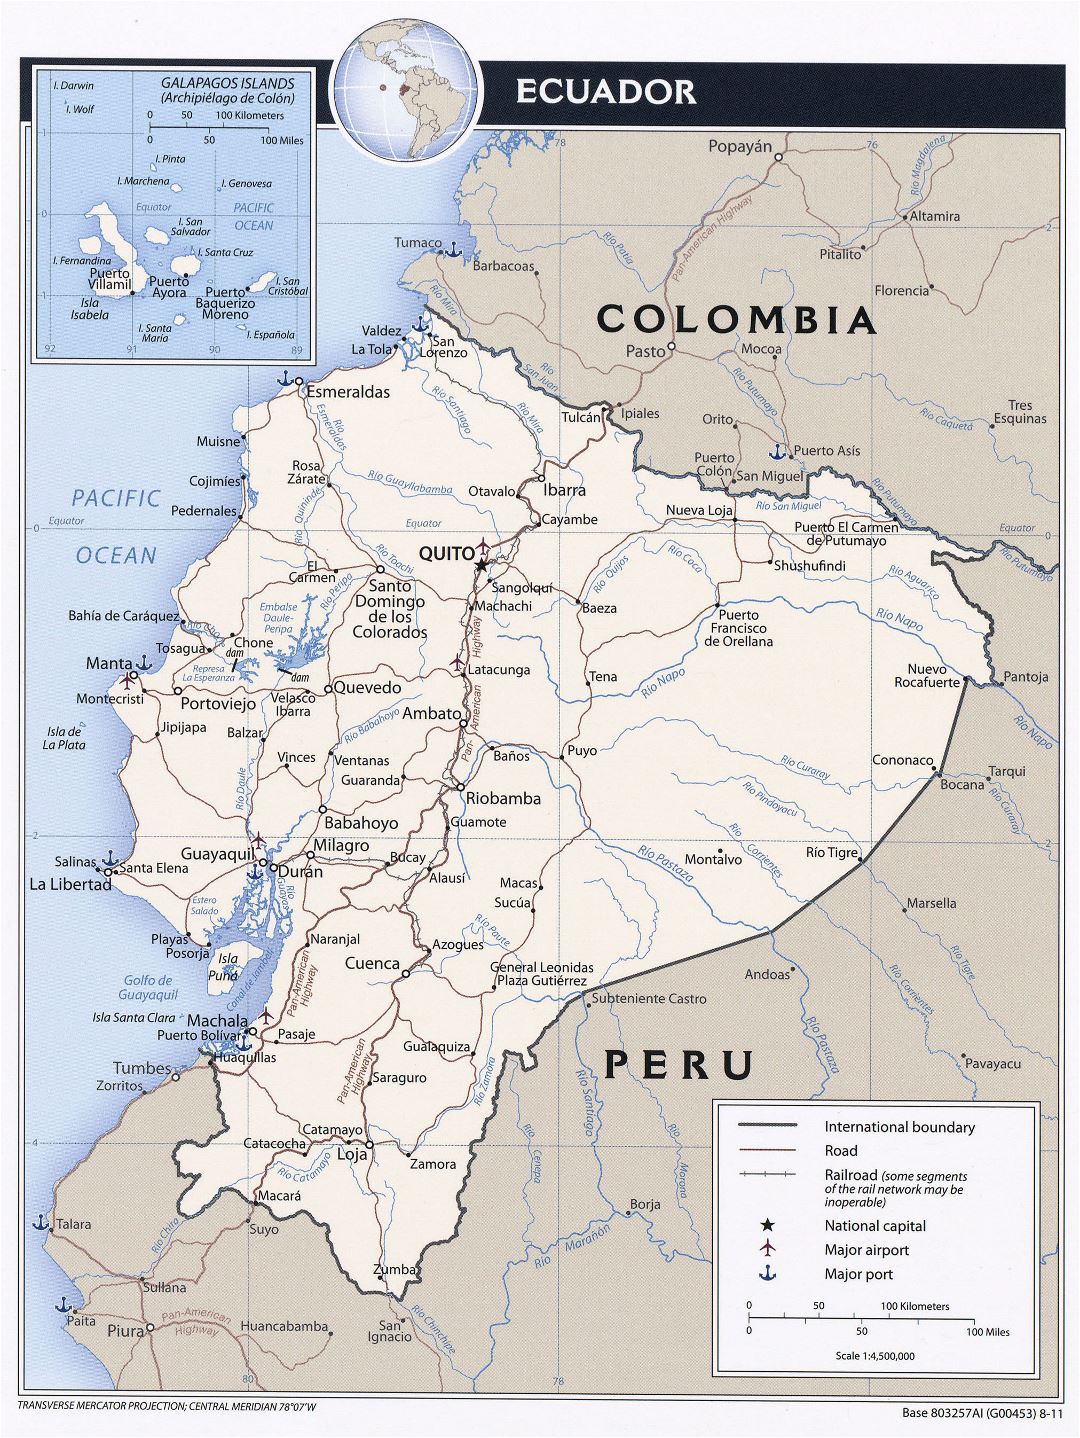 Большая детальная политическая карта Эквадора с дорогами, крупными городами и аэропортами - 2011